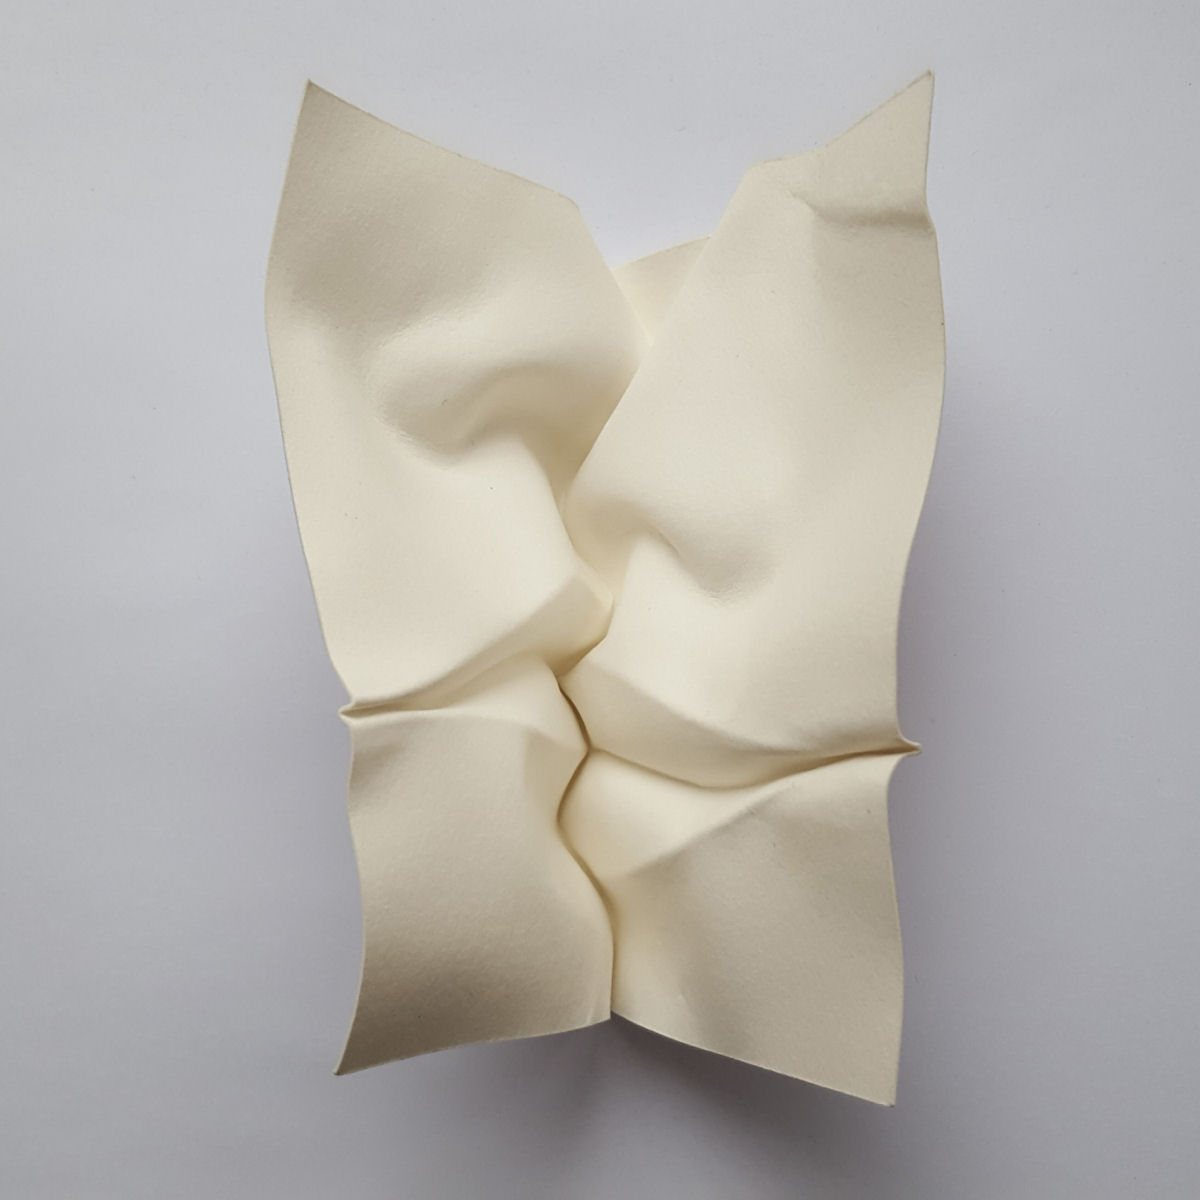 Esculturas sensuais em simples folhas de papel sugerem momentos de intimidade 09